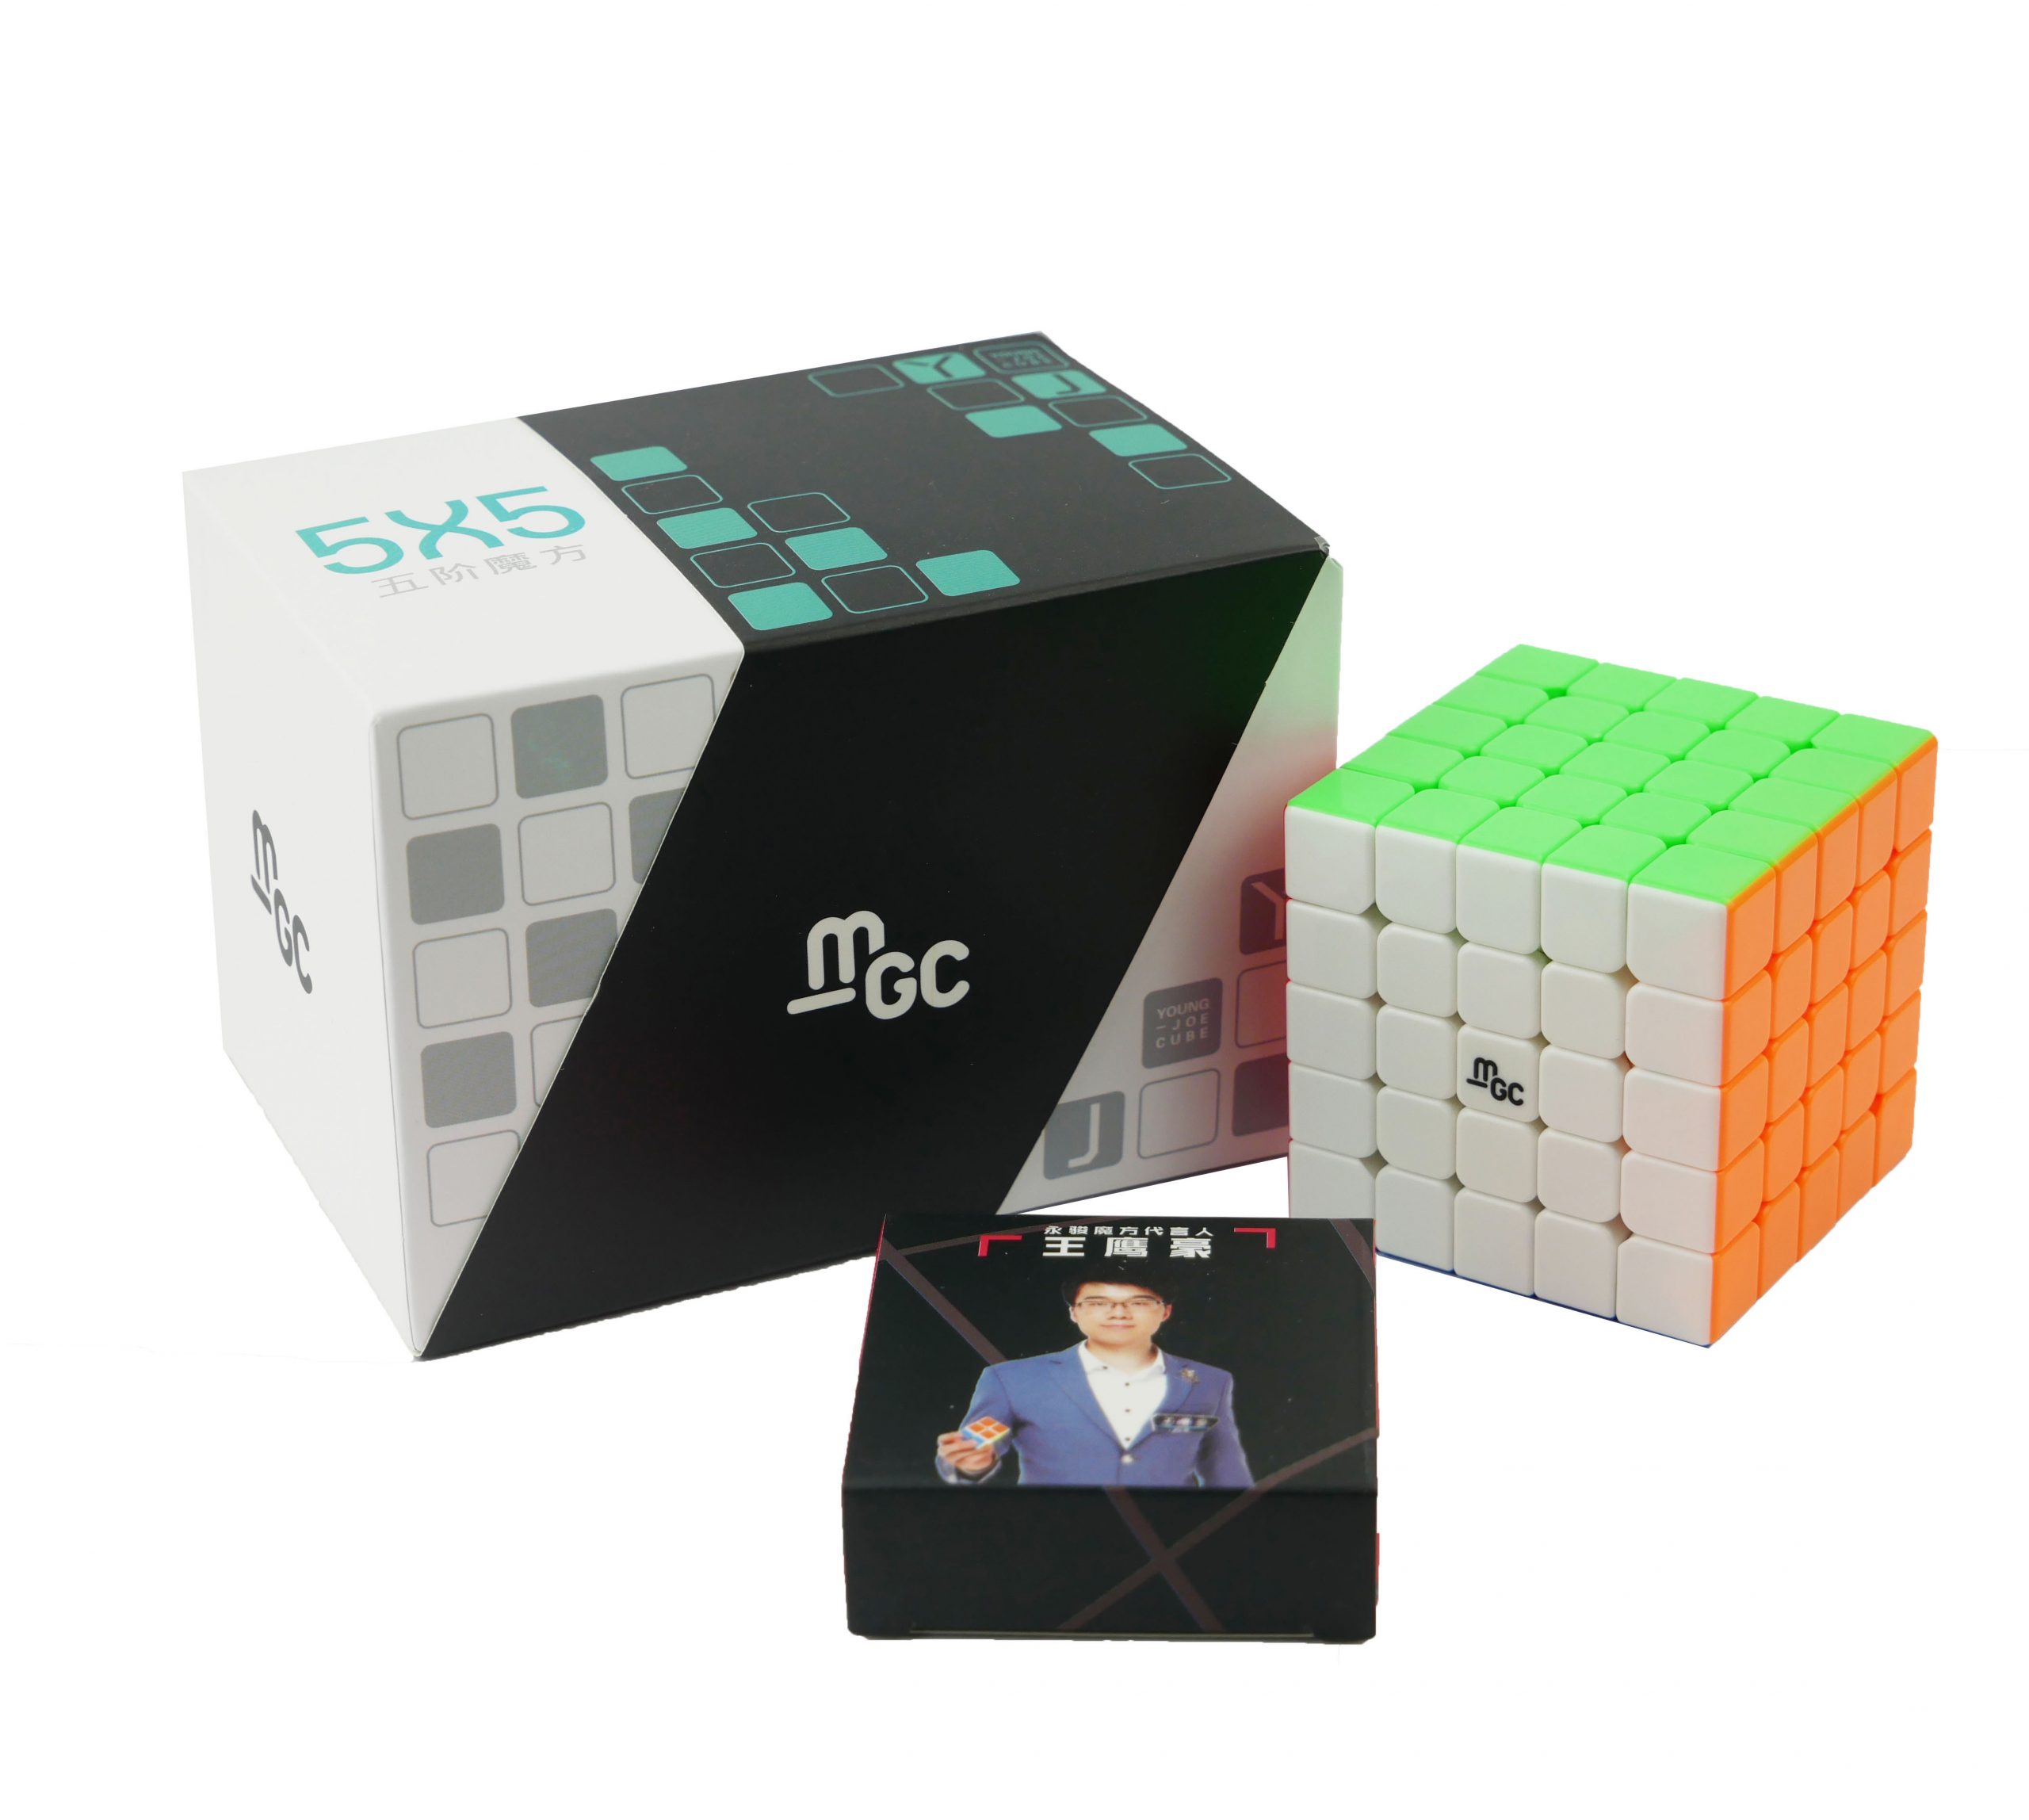 YJ MGC 5x5 Zauberwürfel Speedcube Magic Cube Magischer Würfel